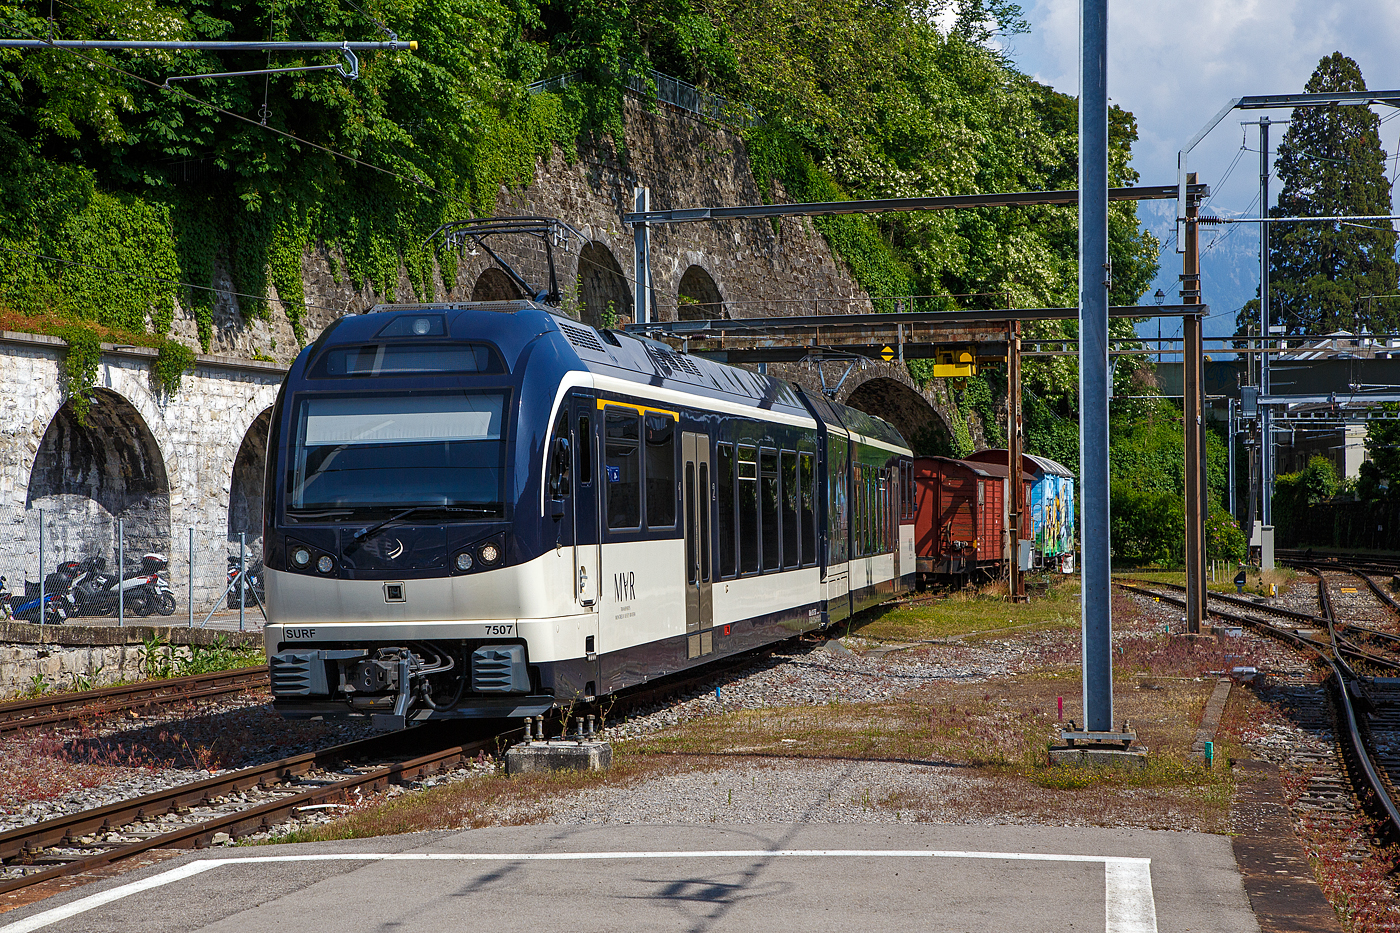 Der MVR (ex CEV) SURF ABeh 2/6 7507 ist am 26 Mai 2023 beim Bahnhof Vevey abgestellt.

SURF steht für Série Unifiée Romande pour Réseau Ferré métrique (Einheitliche Serie für das Westschweizer Meterspurige Schienennetz). Diese ab 2015 gebaute meterspurige Triebzüge mit gemischtem Adhäsions- und Zahnradbetrieb gehören zu den Stadler GTW der 4. Generation.
